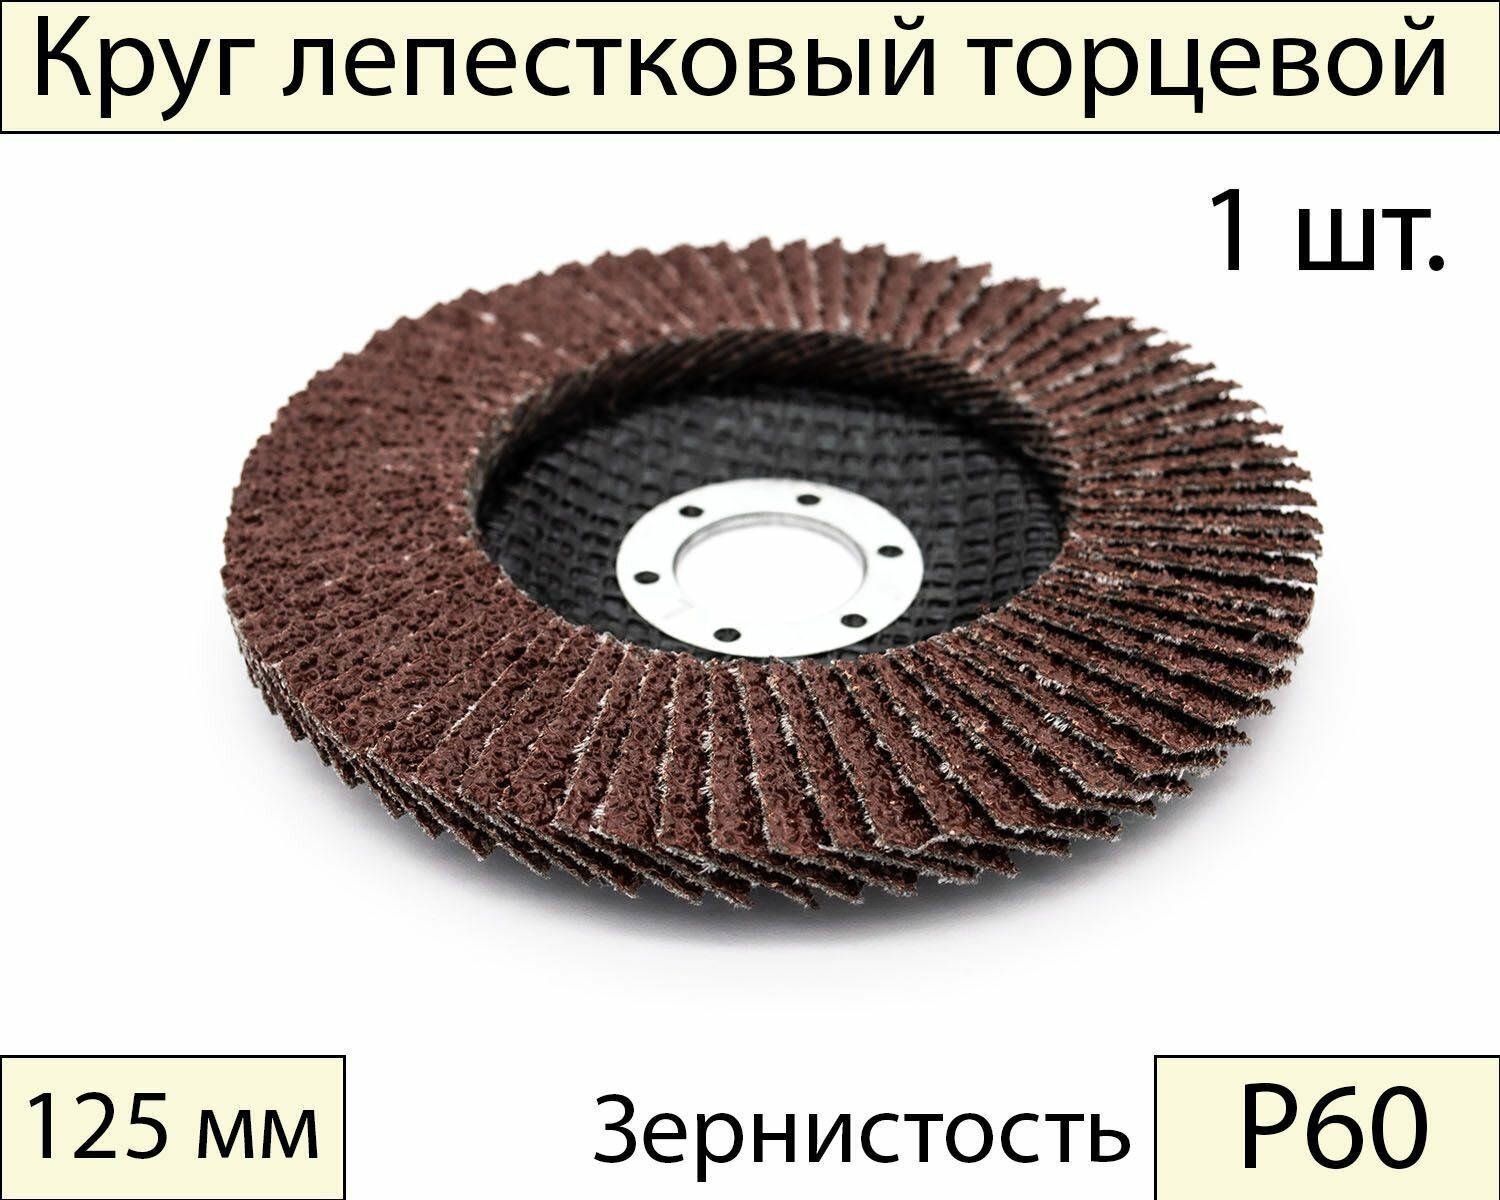 Круги шлифовальные абразивные / лепестковый торцевой диск 125 мм Р60 1 шт.